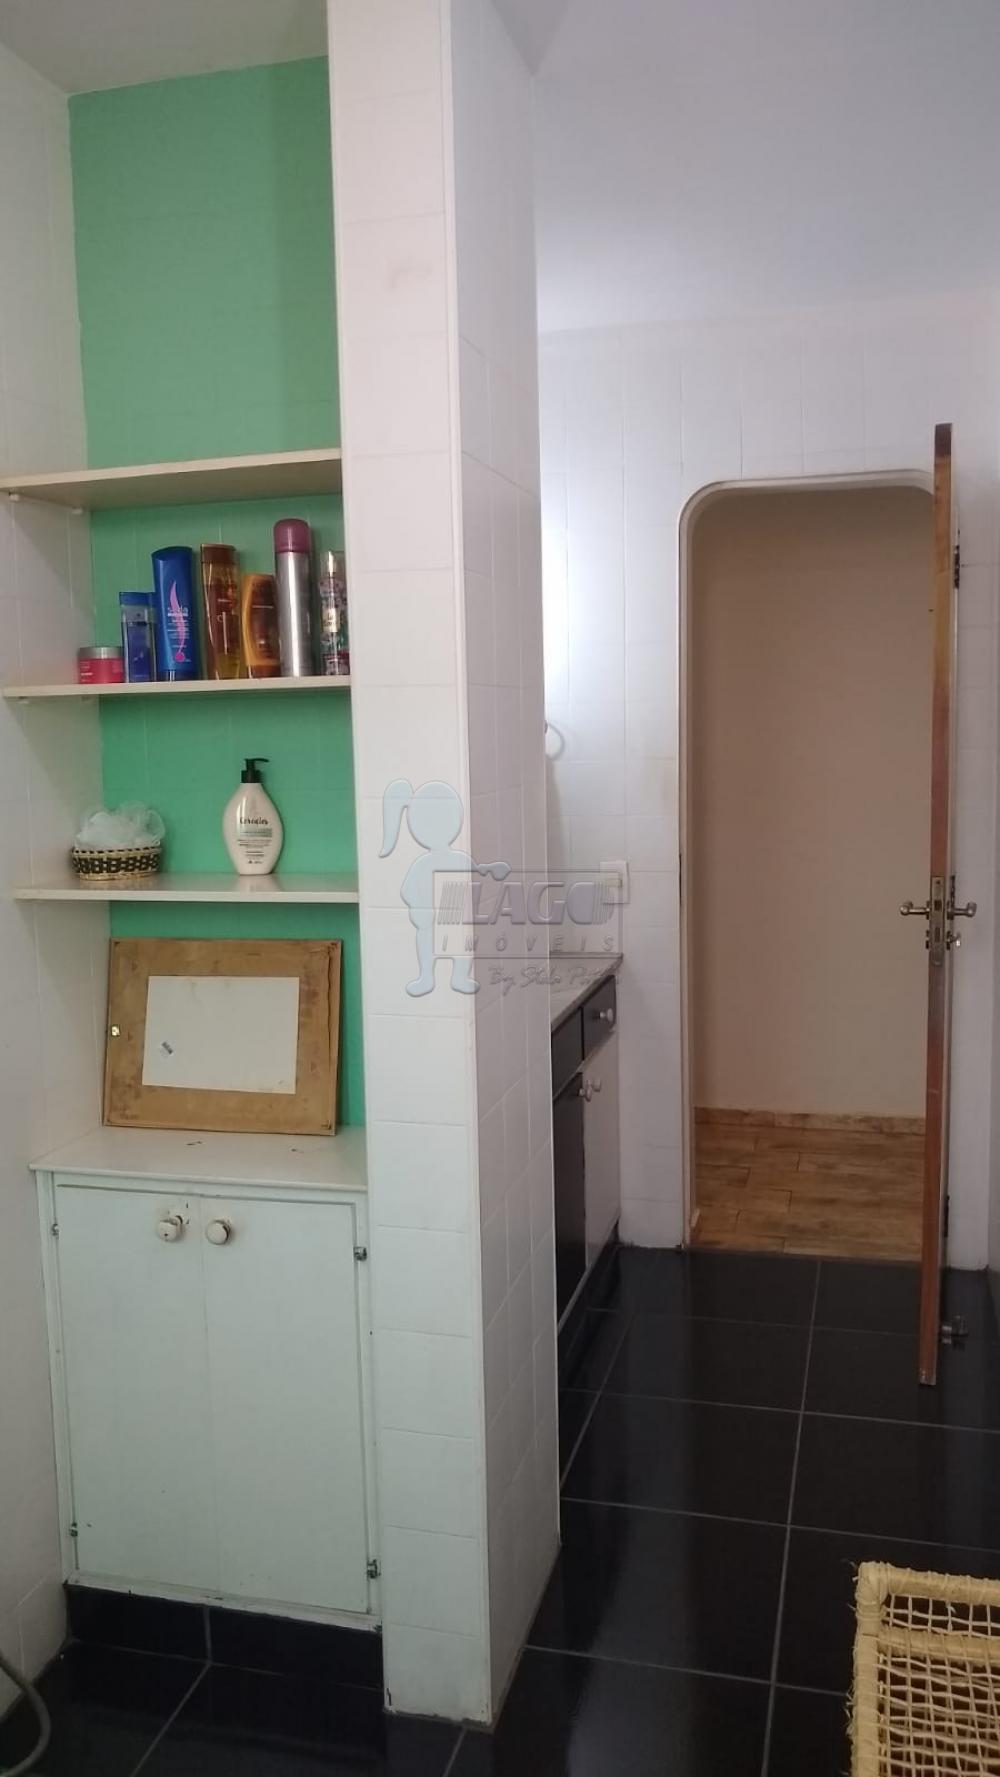 Comprar Apartamentos / Padrão em Ribeirão Preto R$ 470.000,00 - Foto 2